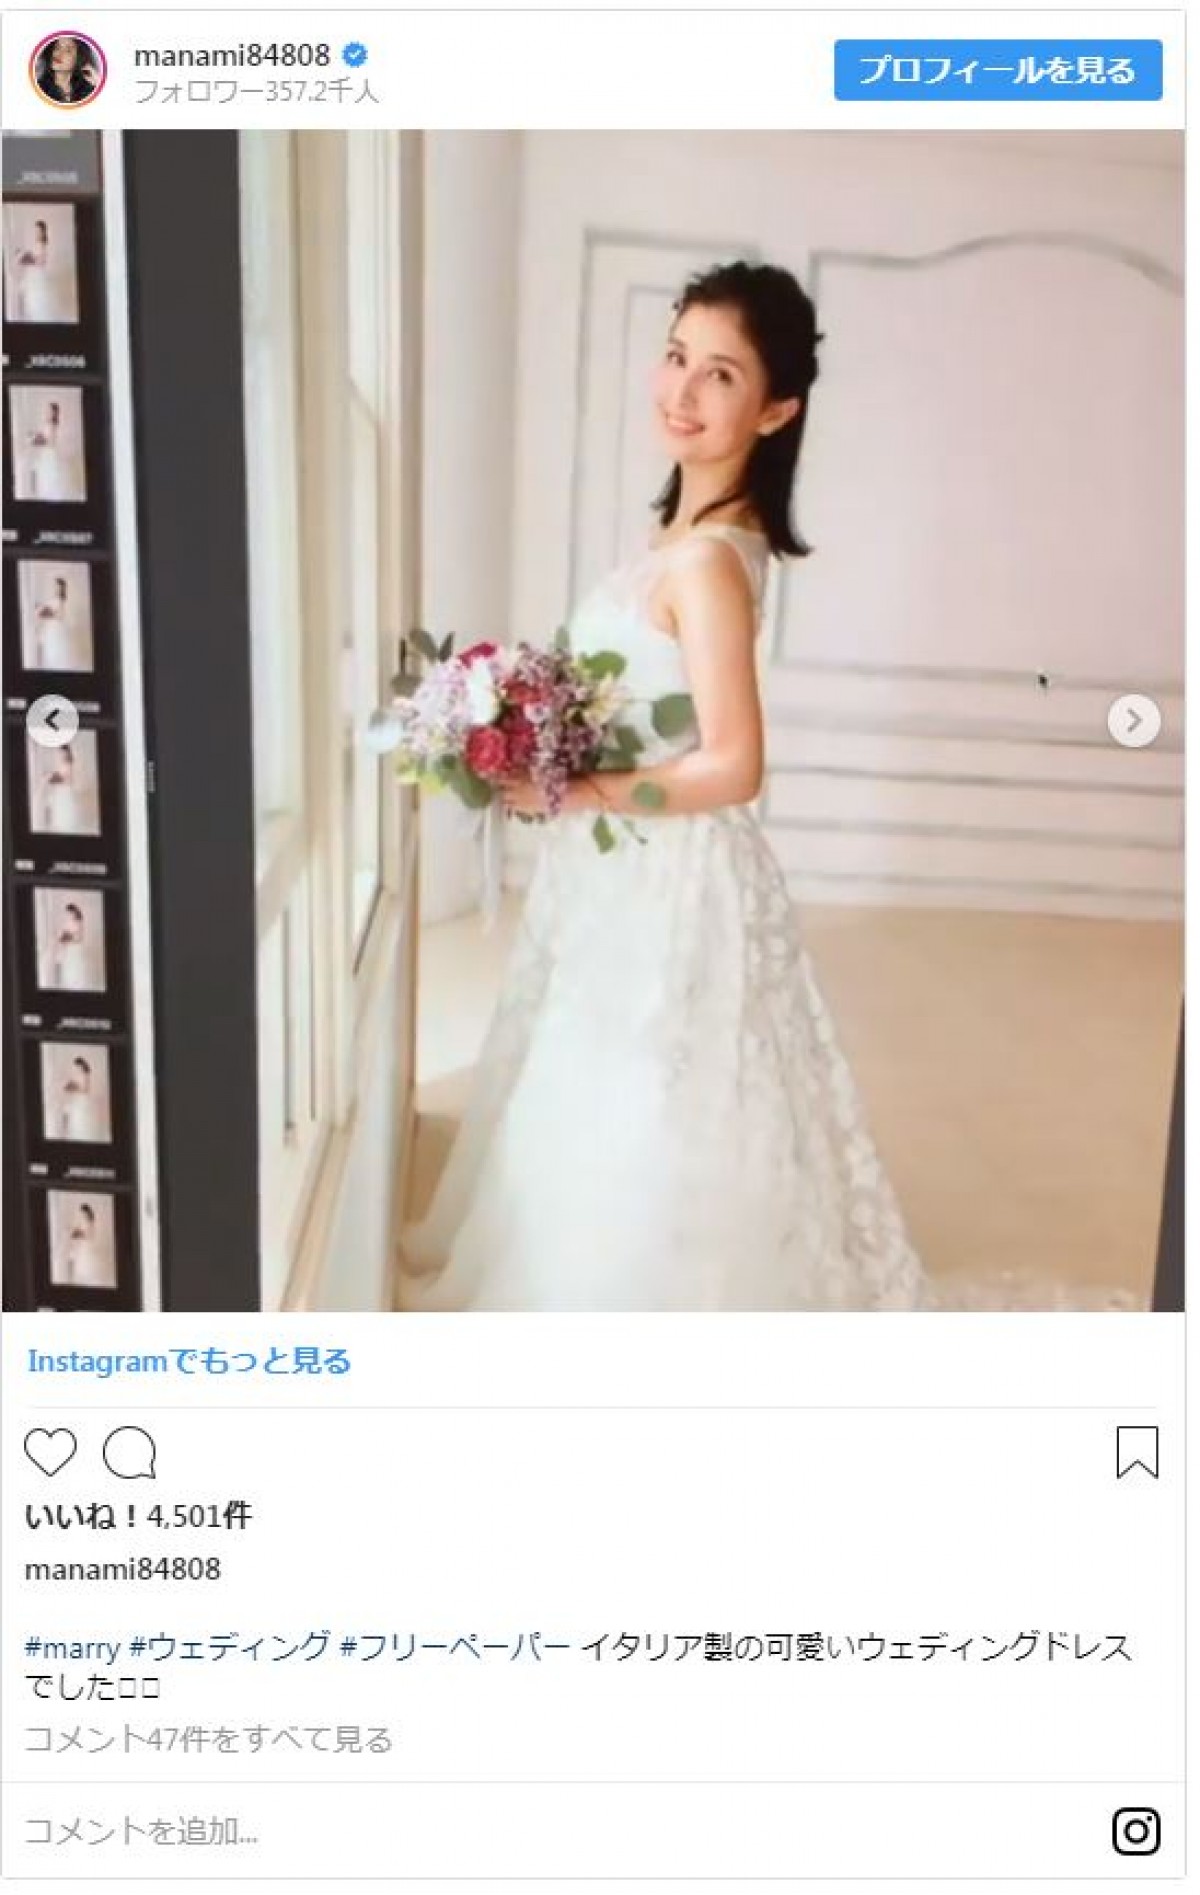 橋本マナミ、純白のウエディングドレス姿 「天使」「きれい」と評判